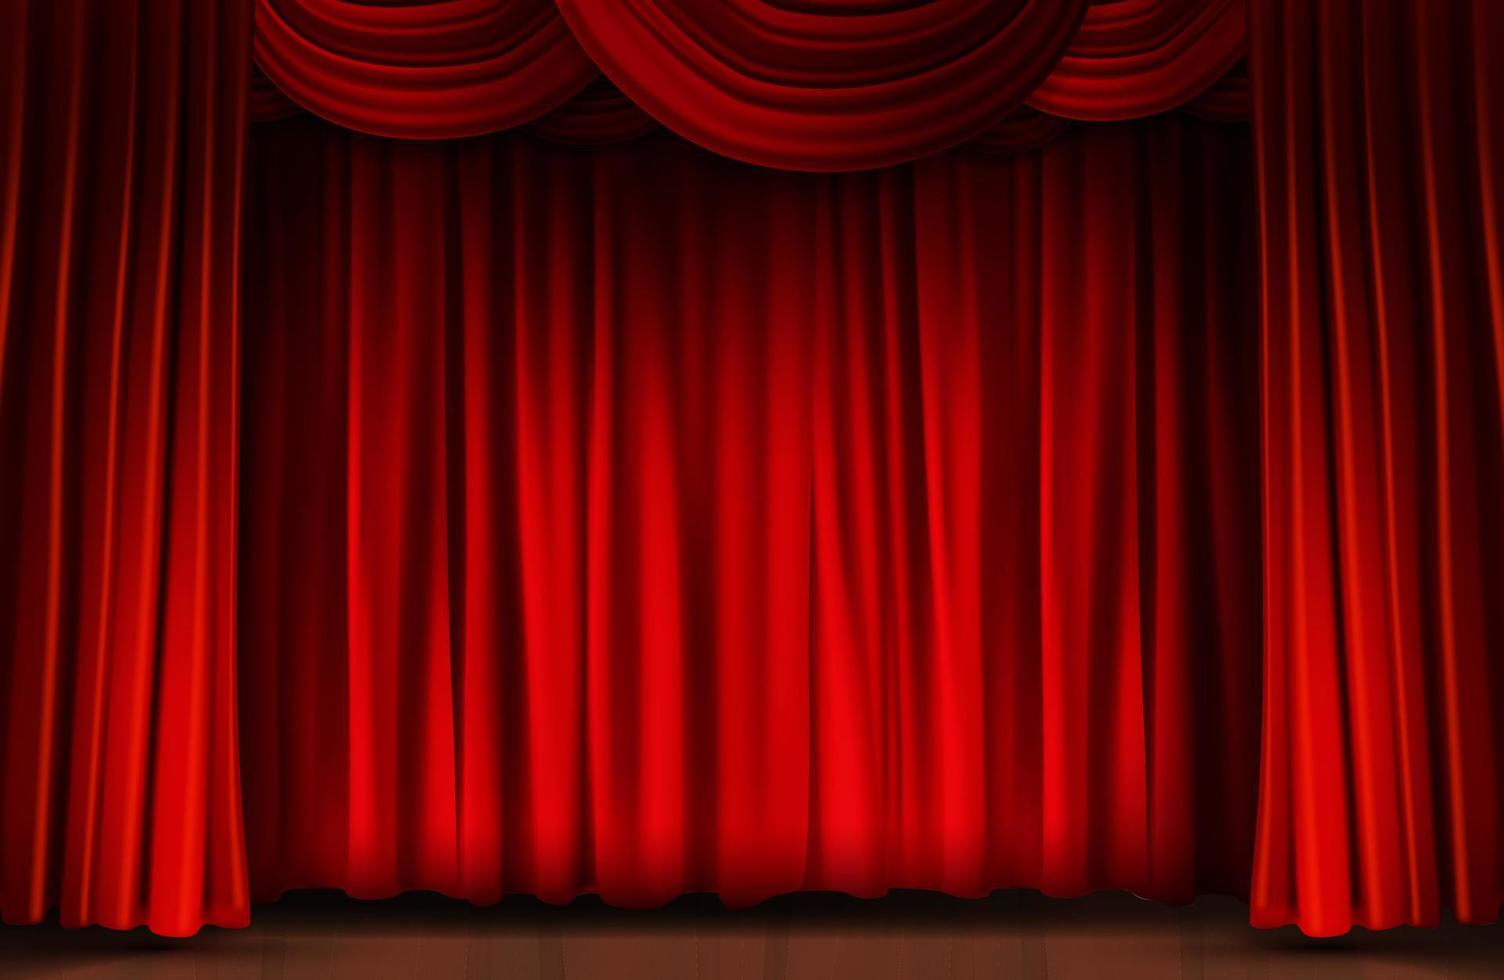 cortina vermelha se fecha no fundo do palco. ilustração vetorial vetor